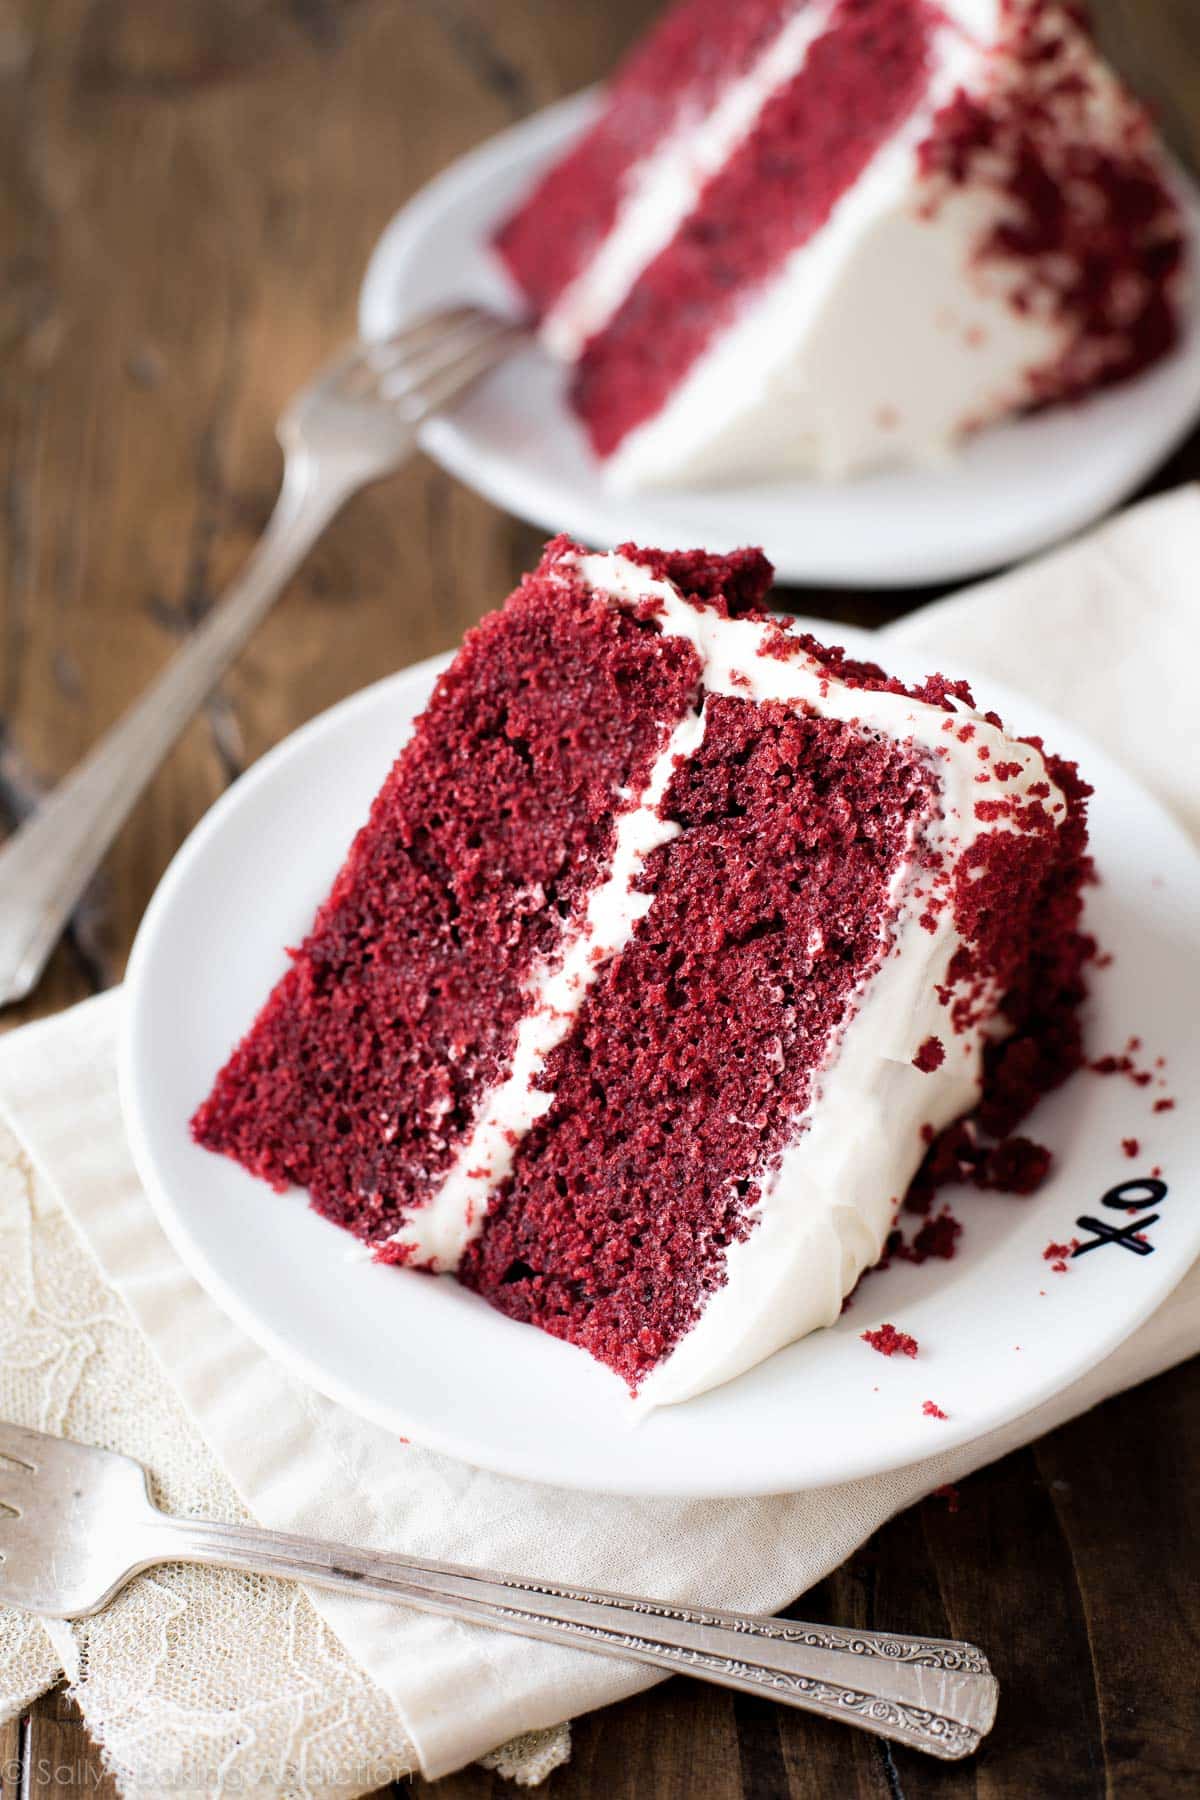 Slices of red velvet cake on white plates